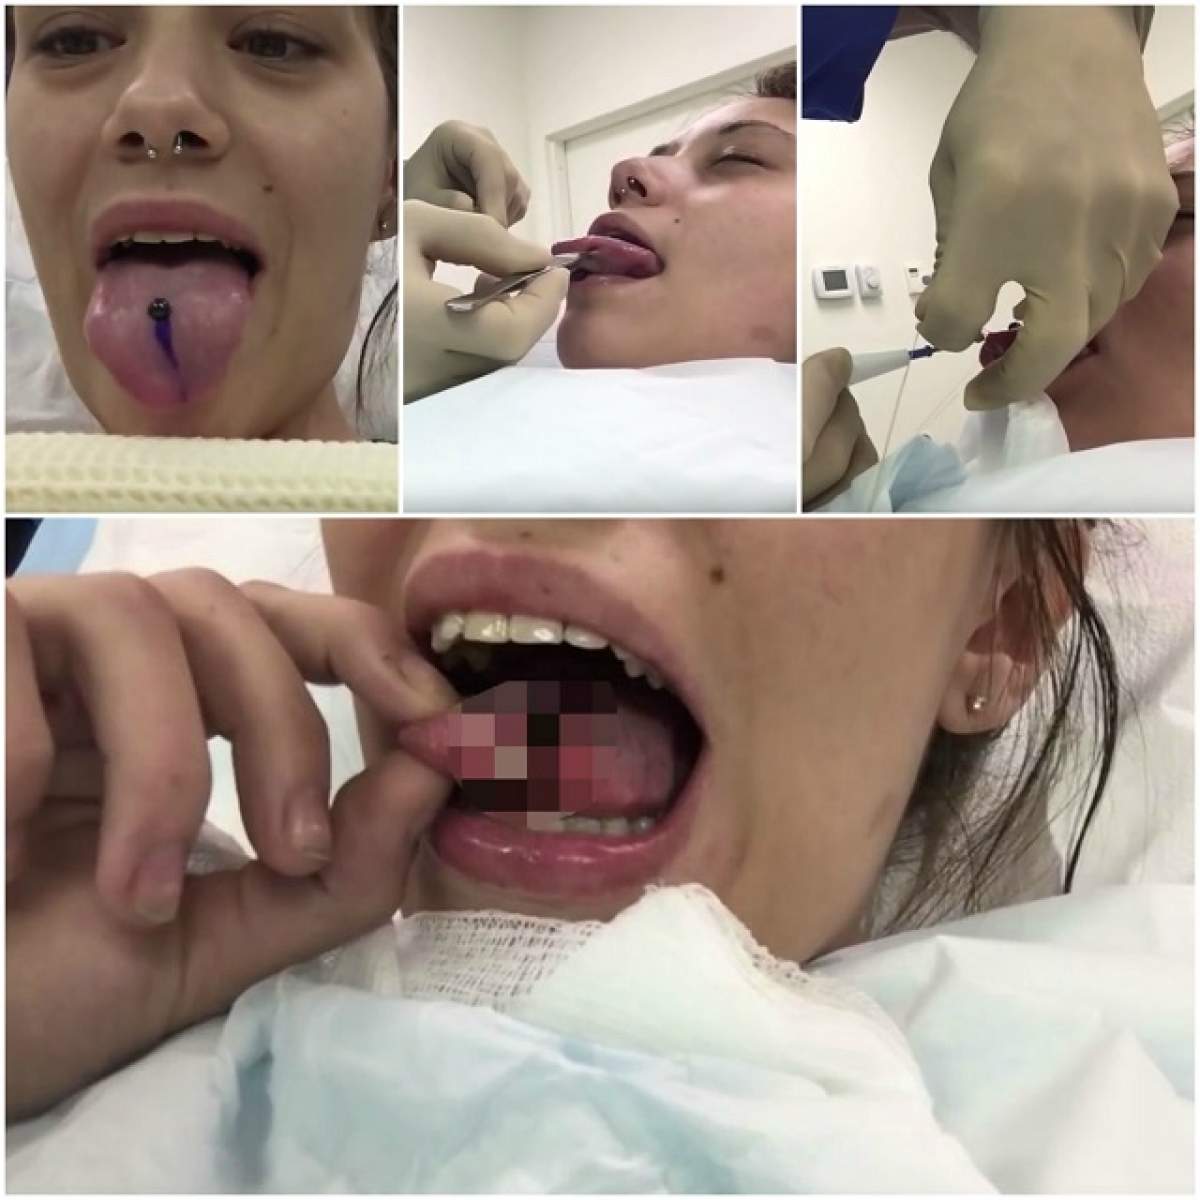 VIDEO / I-a marcat limba, după care a început să i-o cresteze! Imaginile care sperie mii de oameni